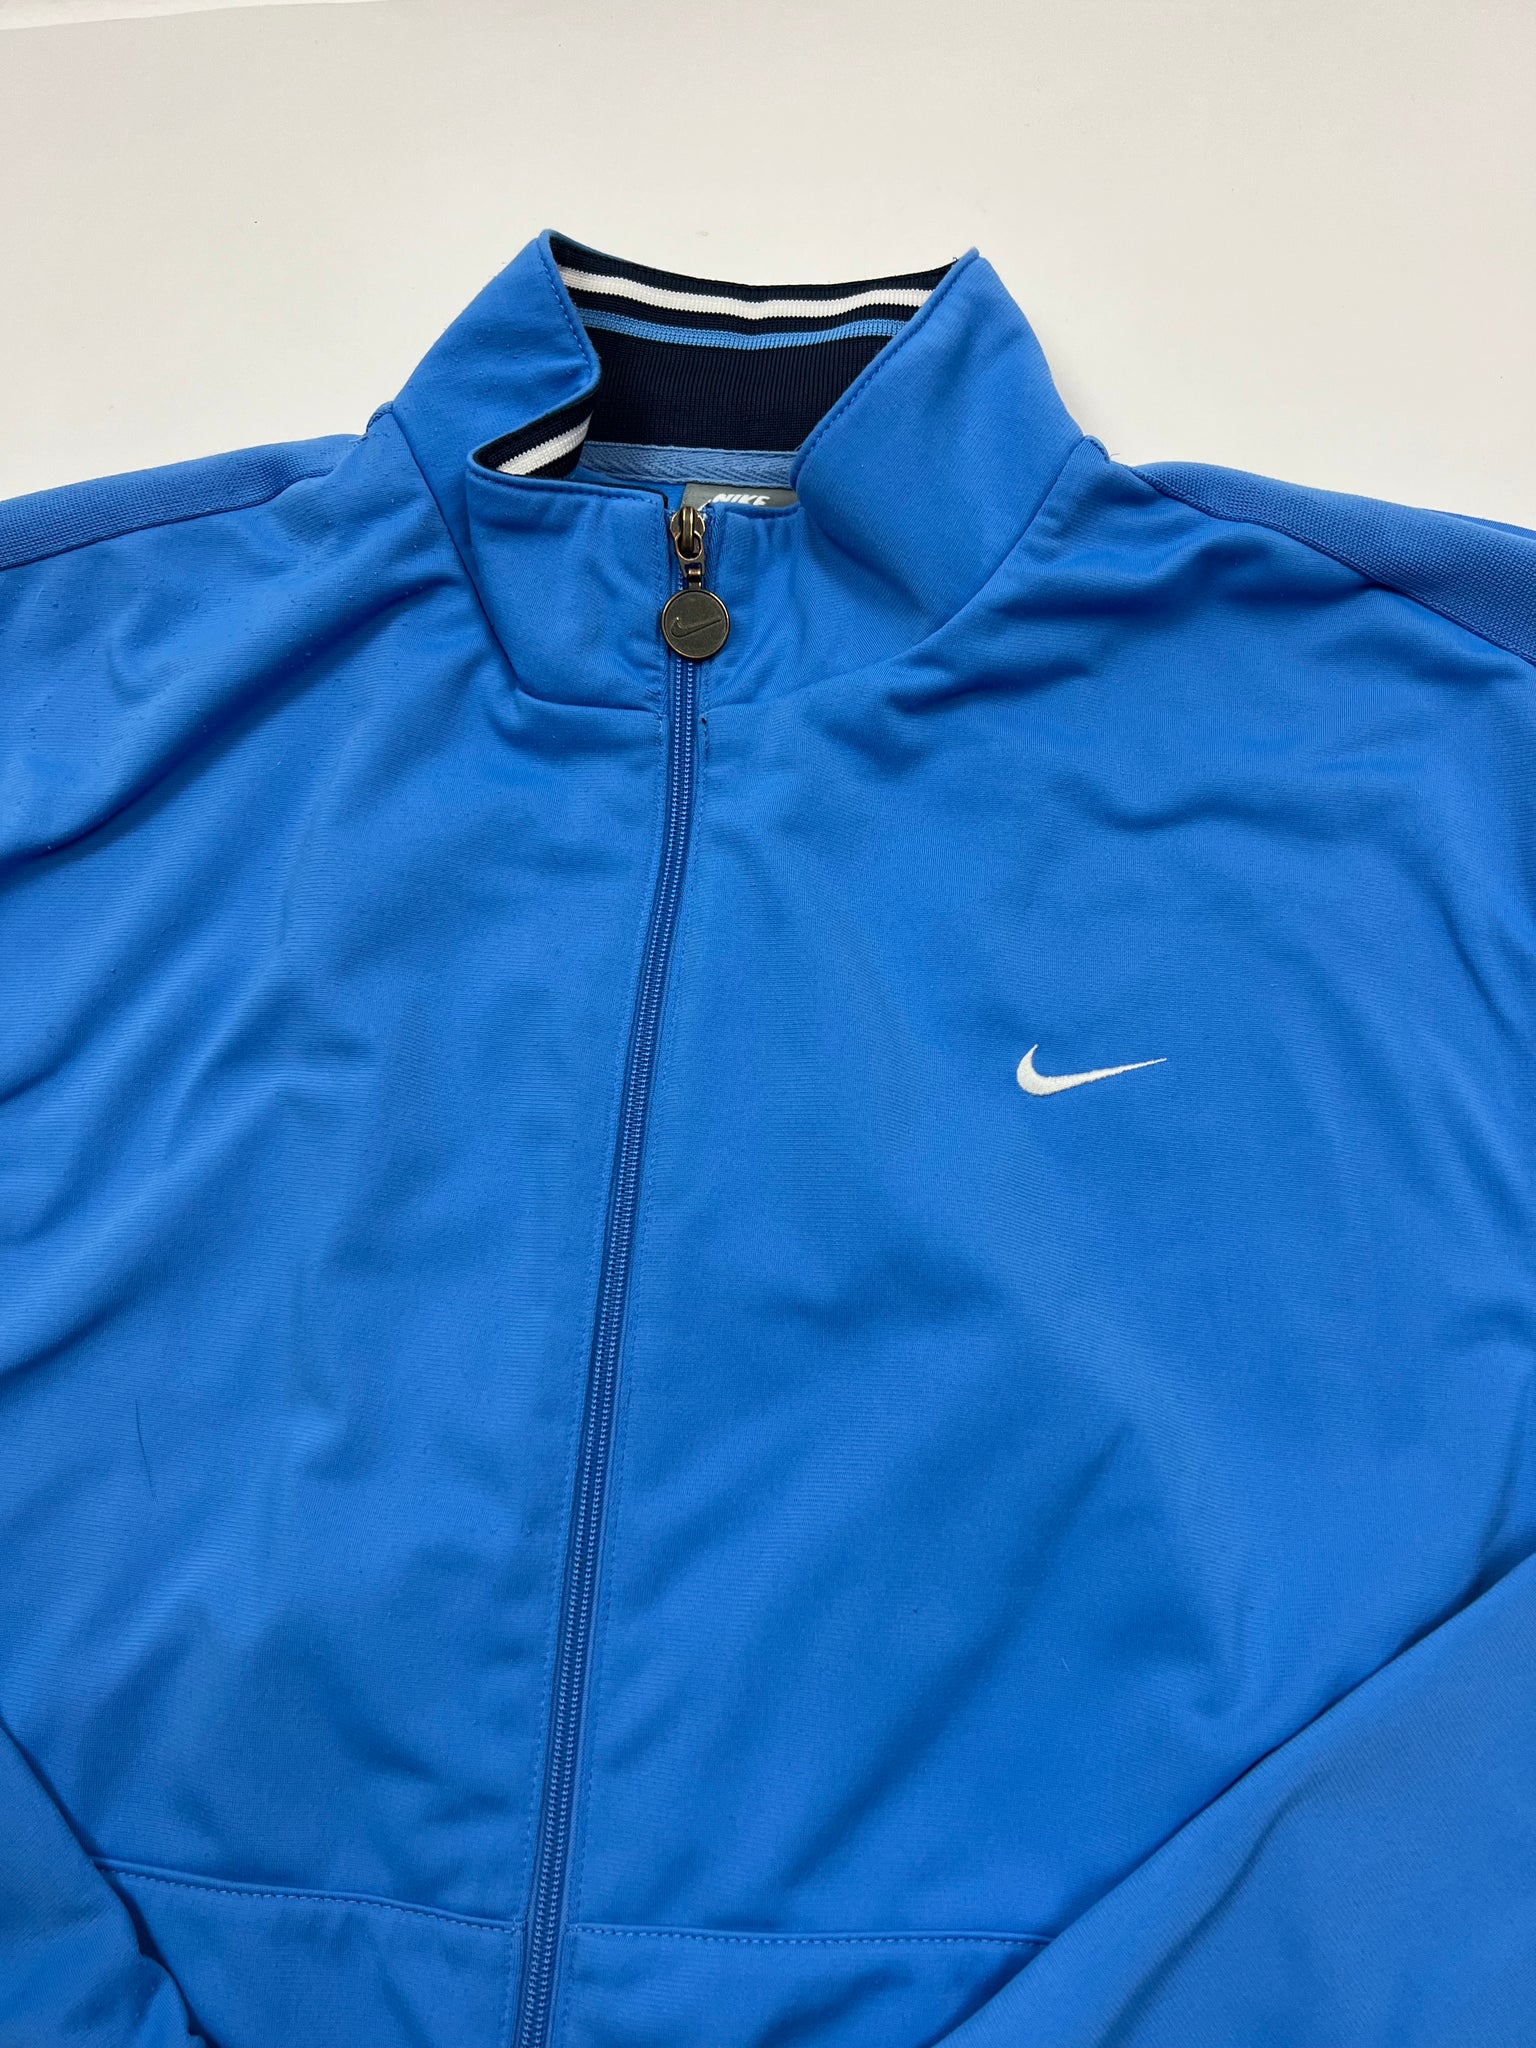 Nike Track Jacket (M)